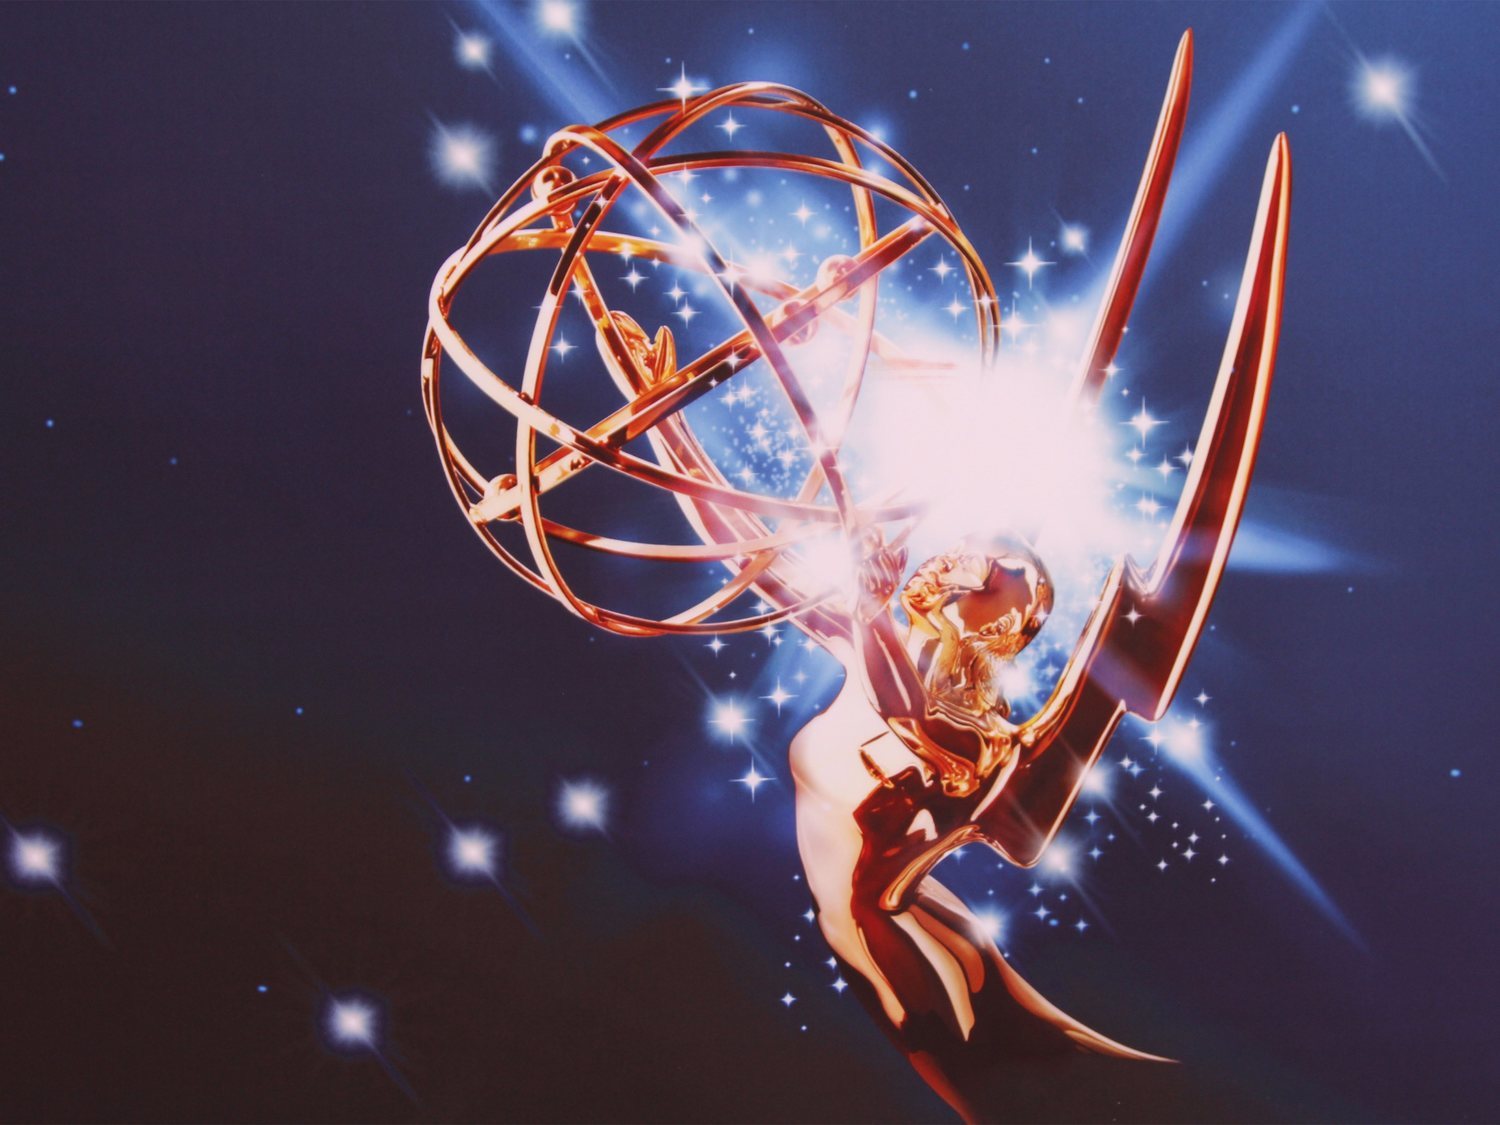 Premios Emmy 2019: lista completa de ganadores